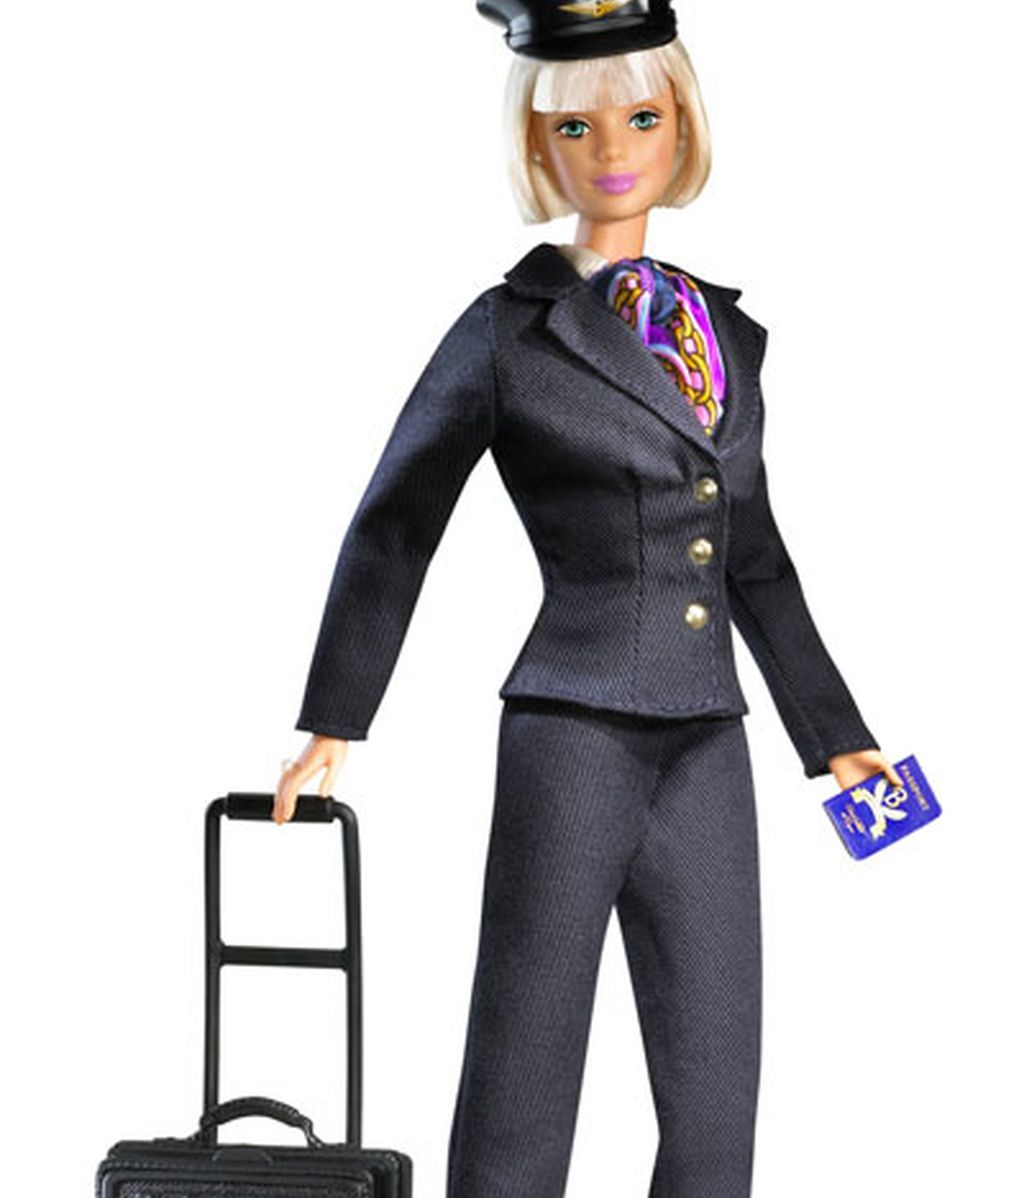 Barbie se saca las carreras de periodismo e informática